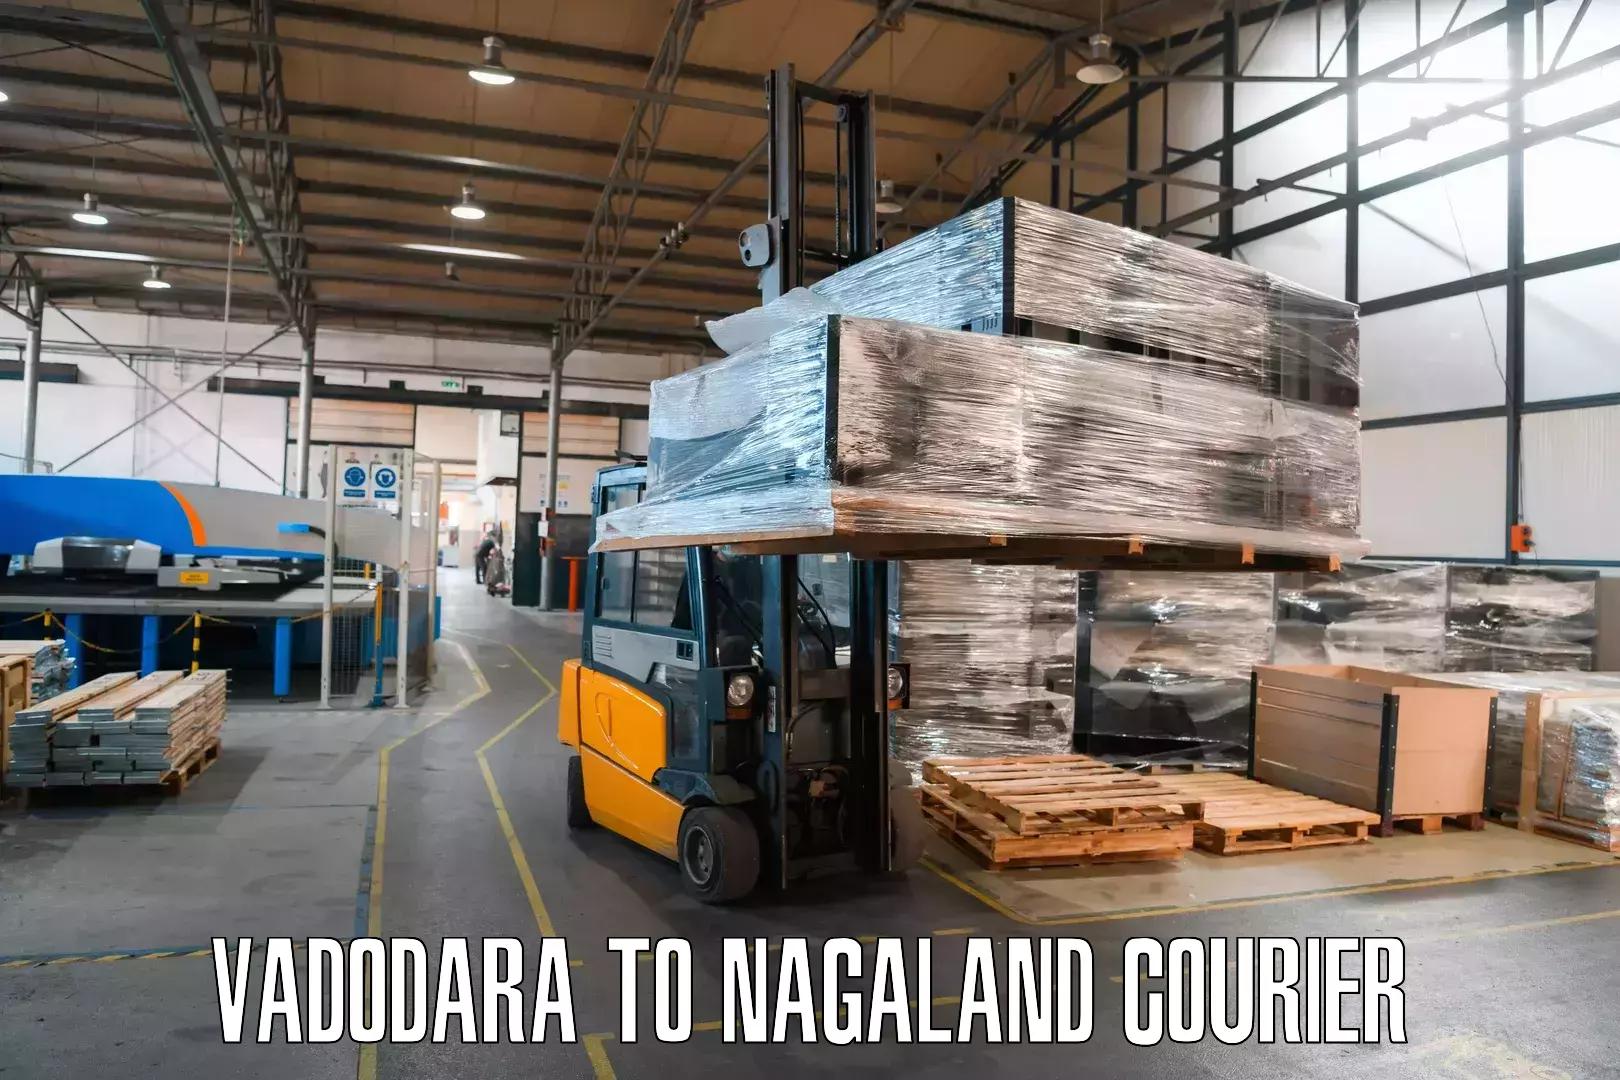 Doorstep delivery service Vadodara to Nagaland